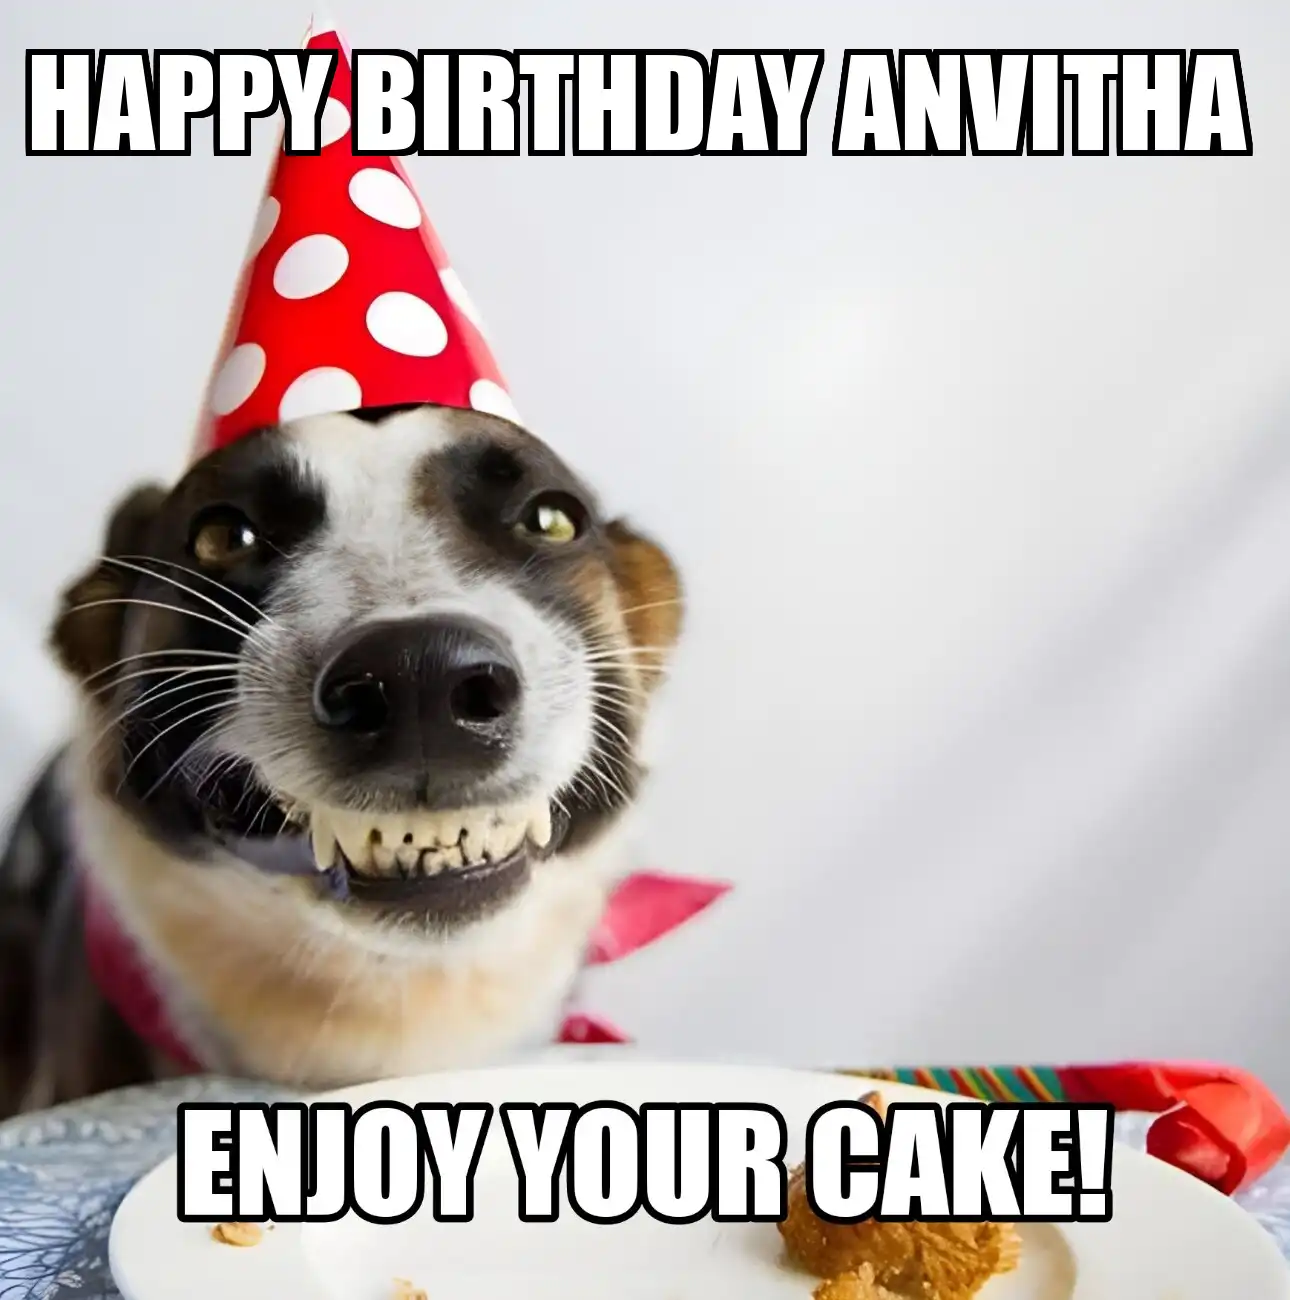 Happy Birthday Anvitha Enjoy Your Cake Dog Meme